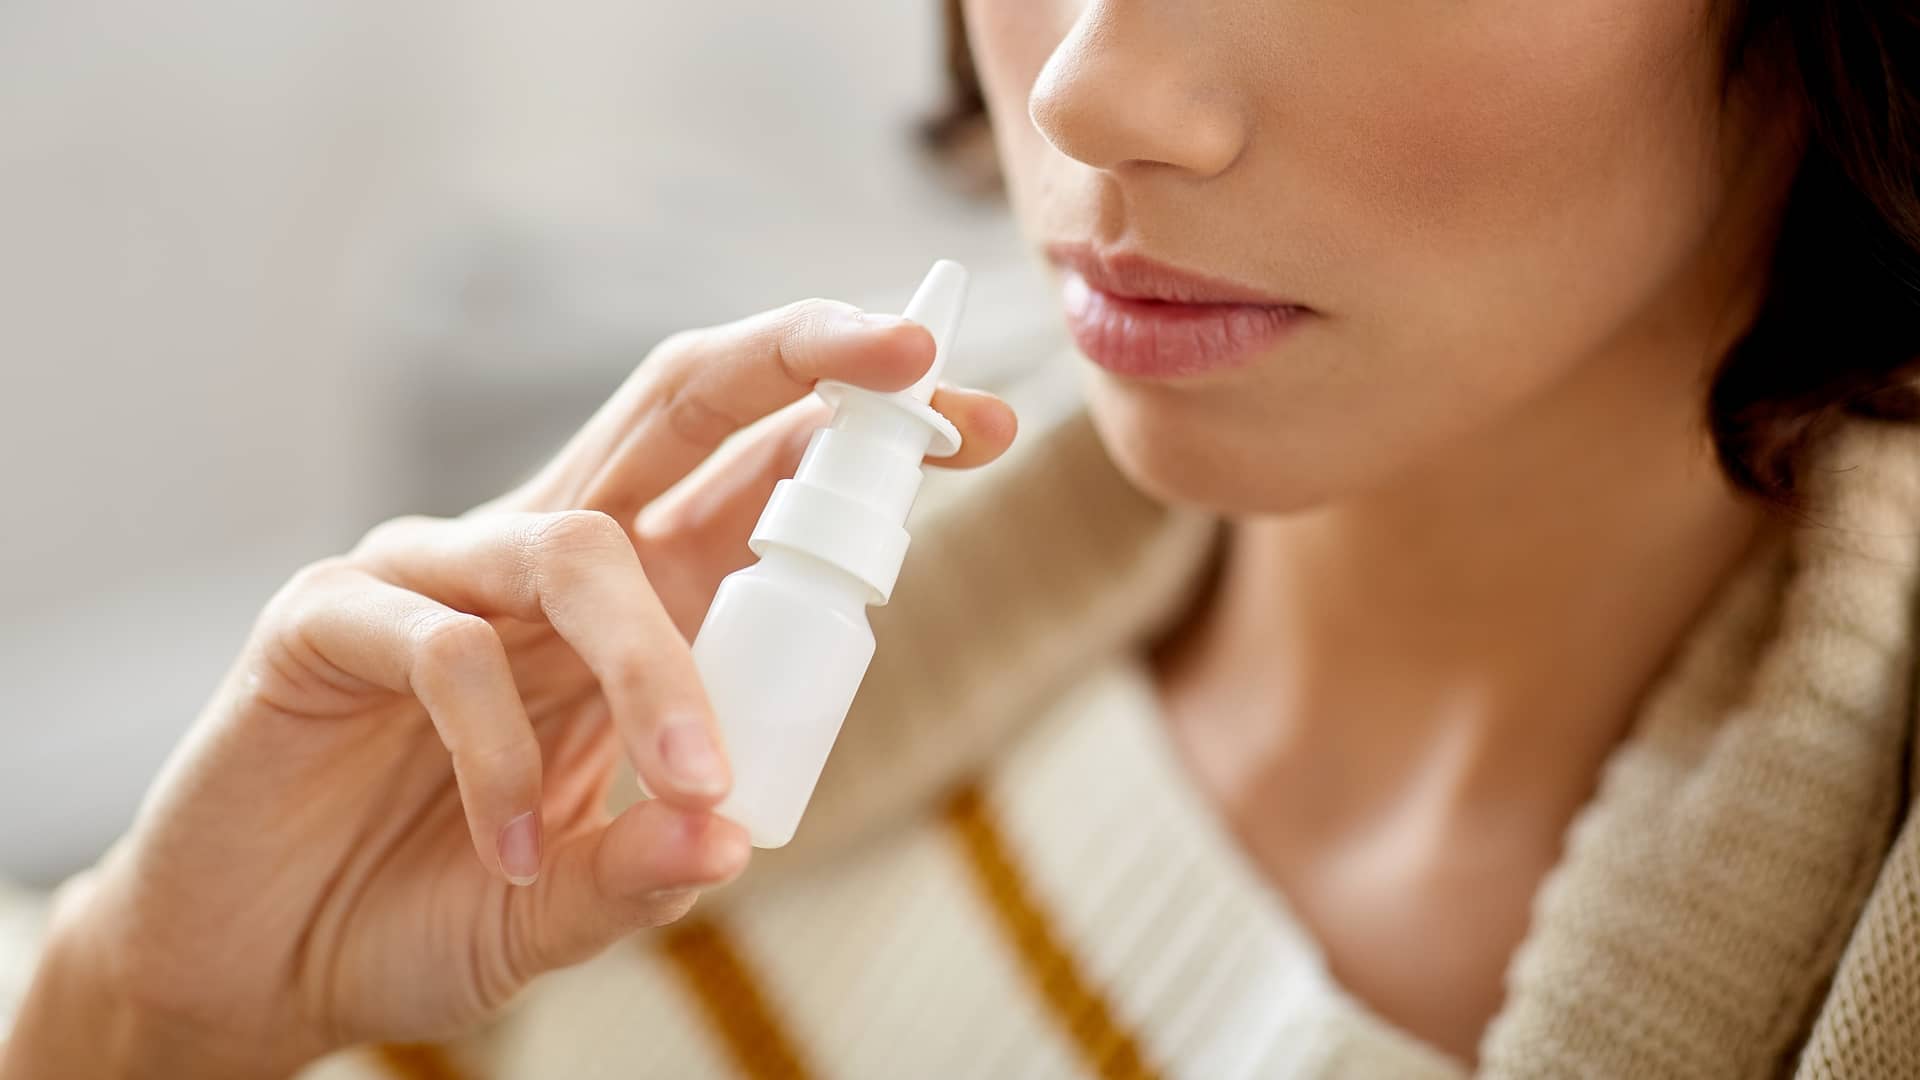 Una mujer utilizando el spray nasal de Synarel para favorecer la estimulación ovárica con ese medicamento